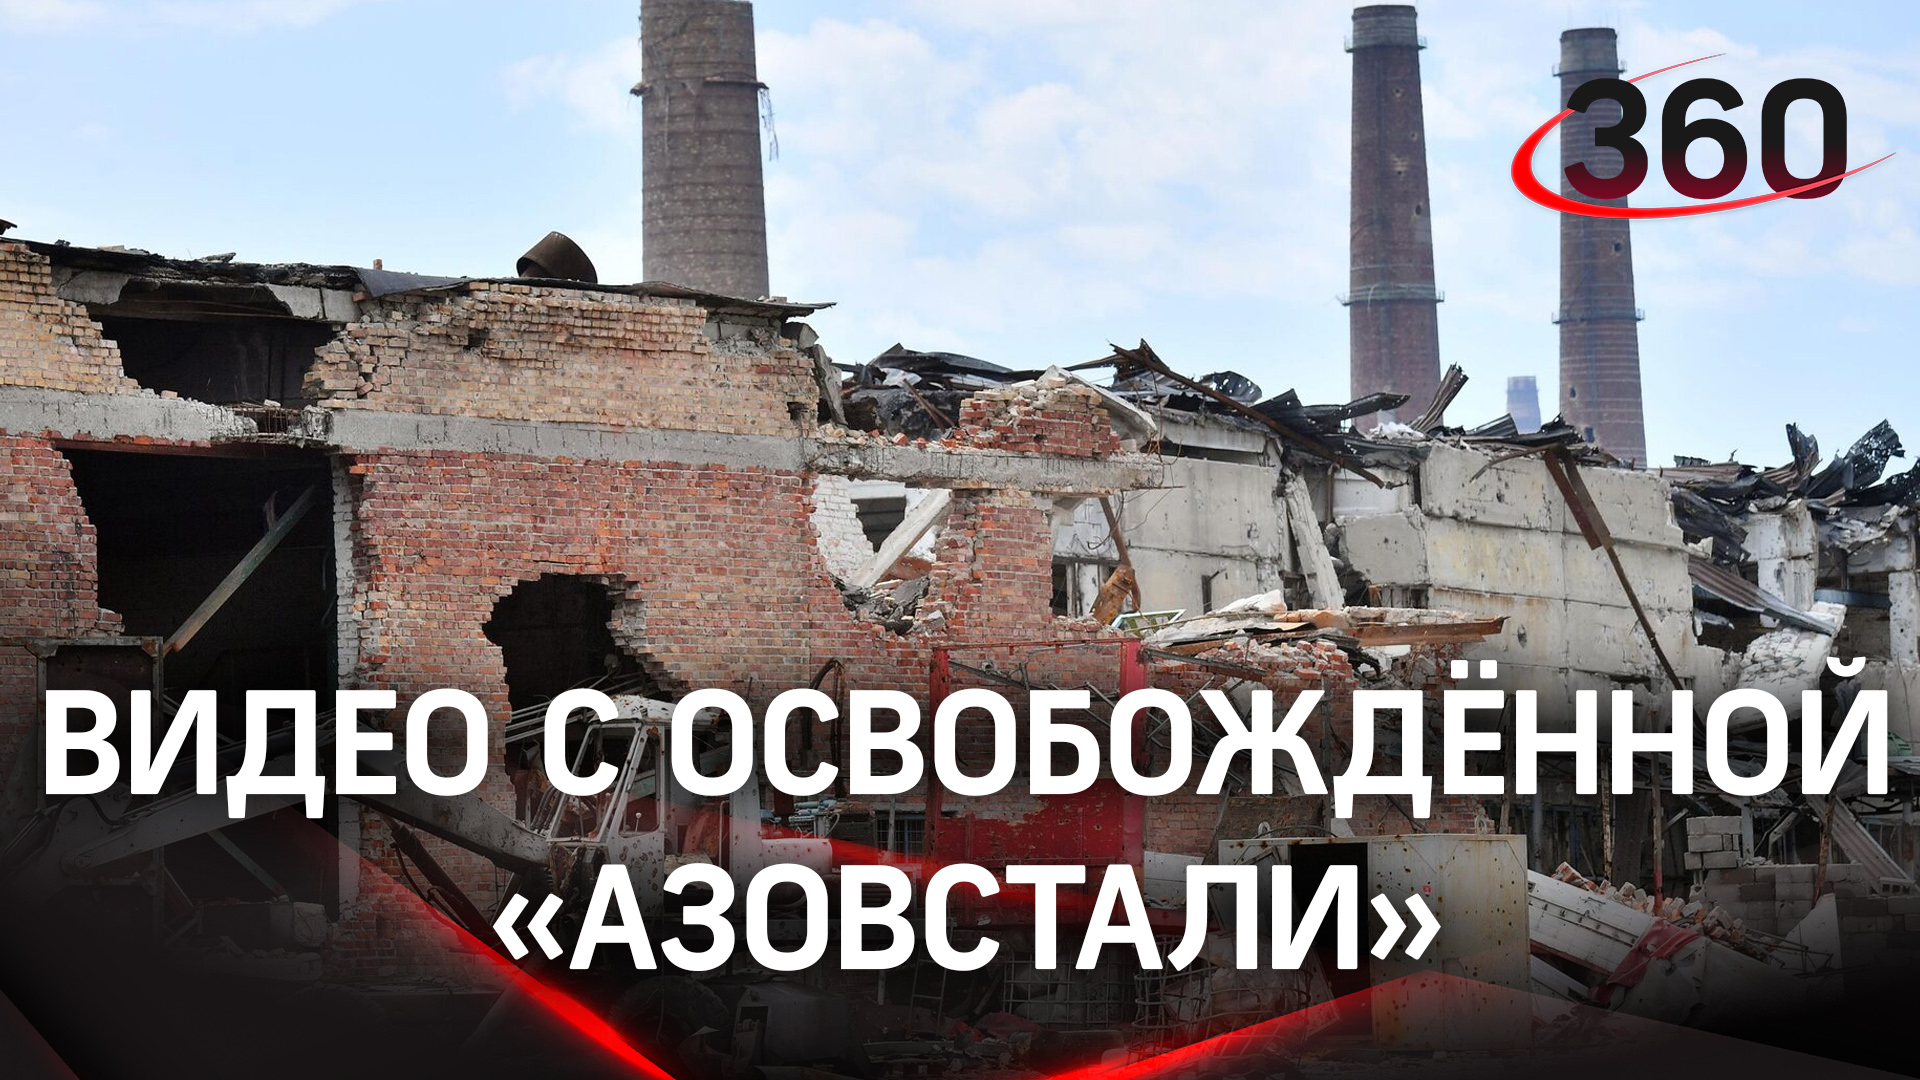 Сгоревшая техника, снаряды в машинах и детские игрушки в подвалах: видео освобождённого завода «Азов